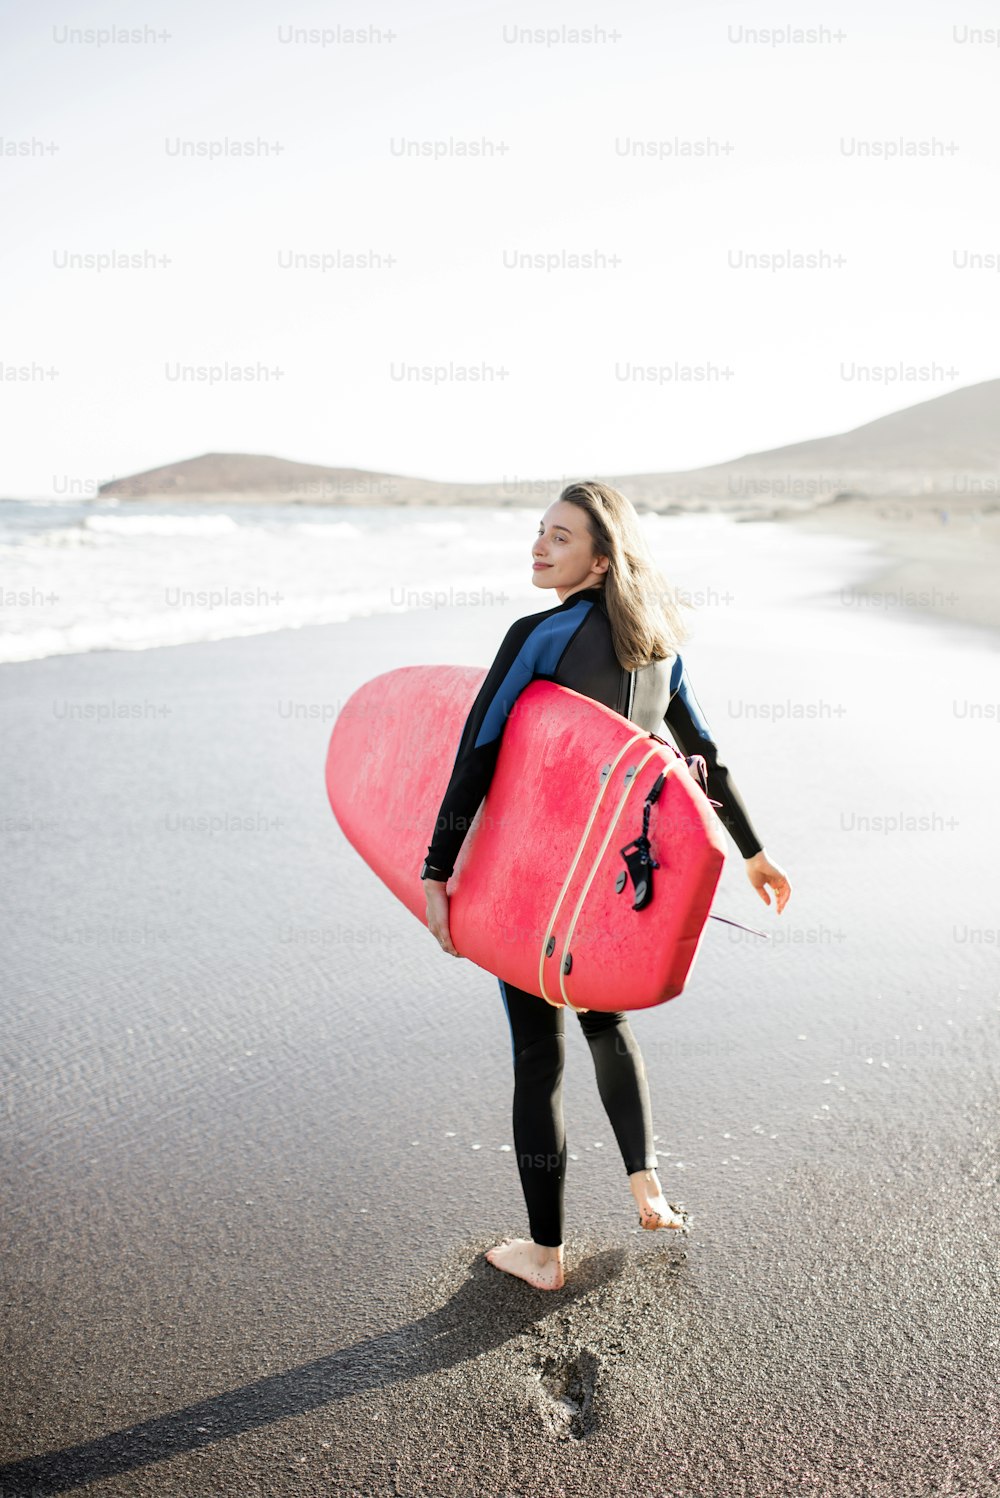 Junge Frau im Neoprenanzug läuft mit Surfbrett, hinterlässt Fußspuren im Sand, Blick von hinten. Wassersport- und Active-Lifestyle-Konzept